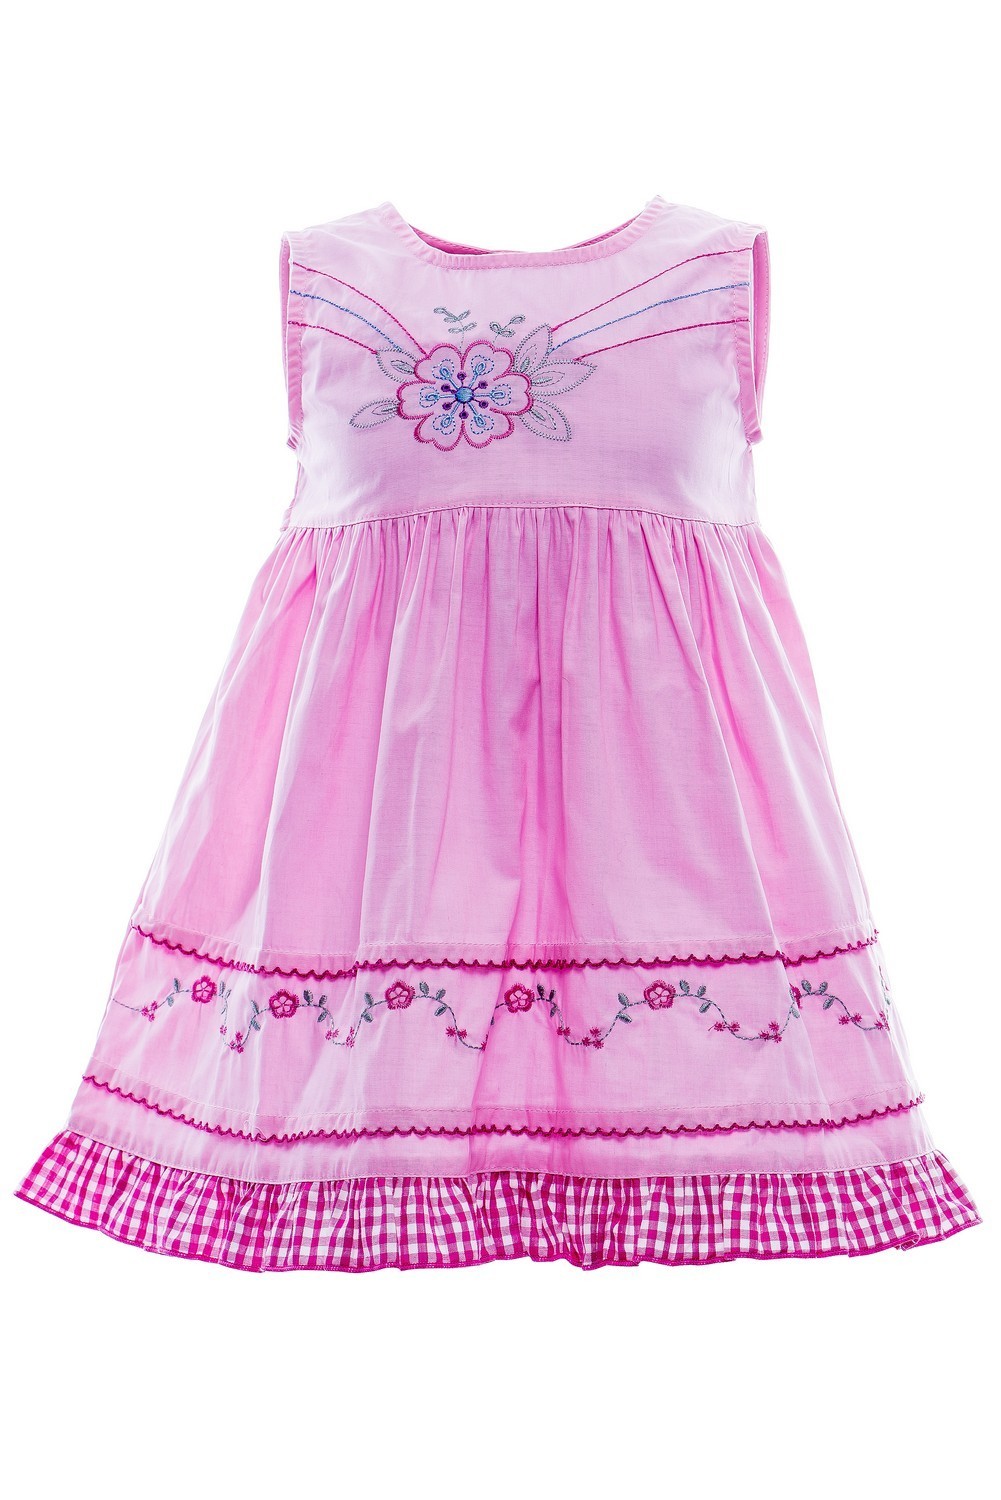 Купить Платье для девочки PL1/59 розовый